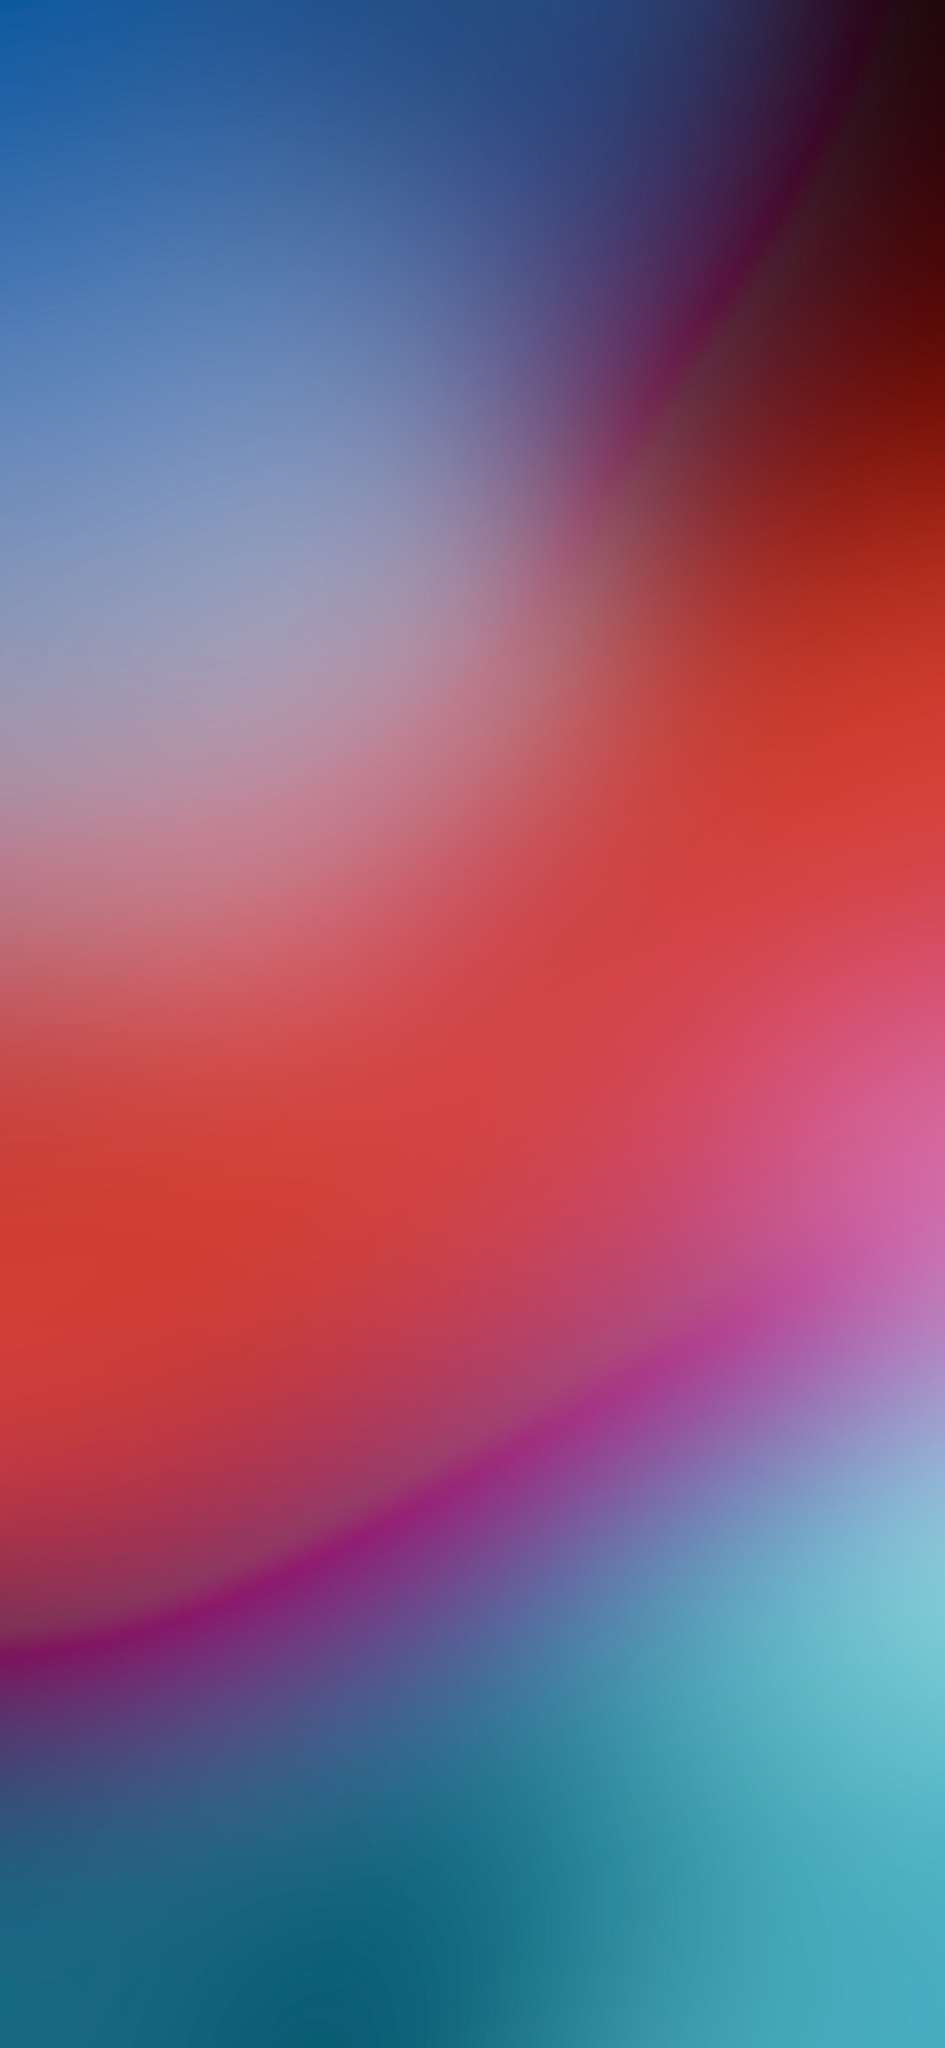 ios 12 blur wallpaper HD   Album on Imgur 945x2048